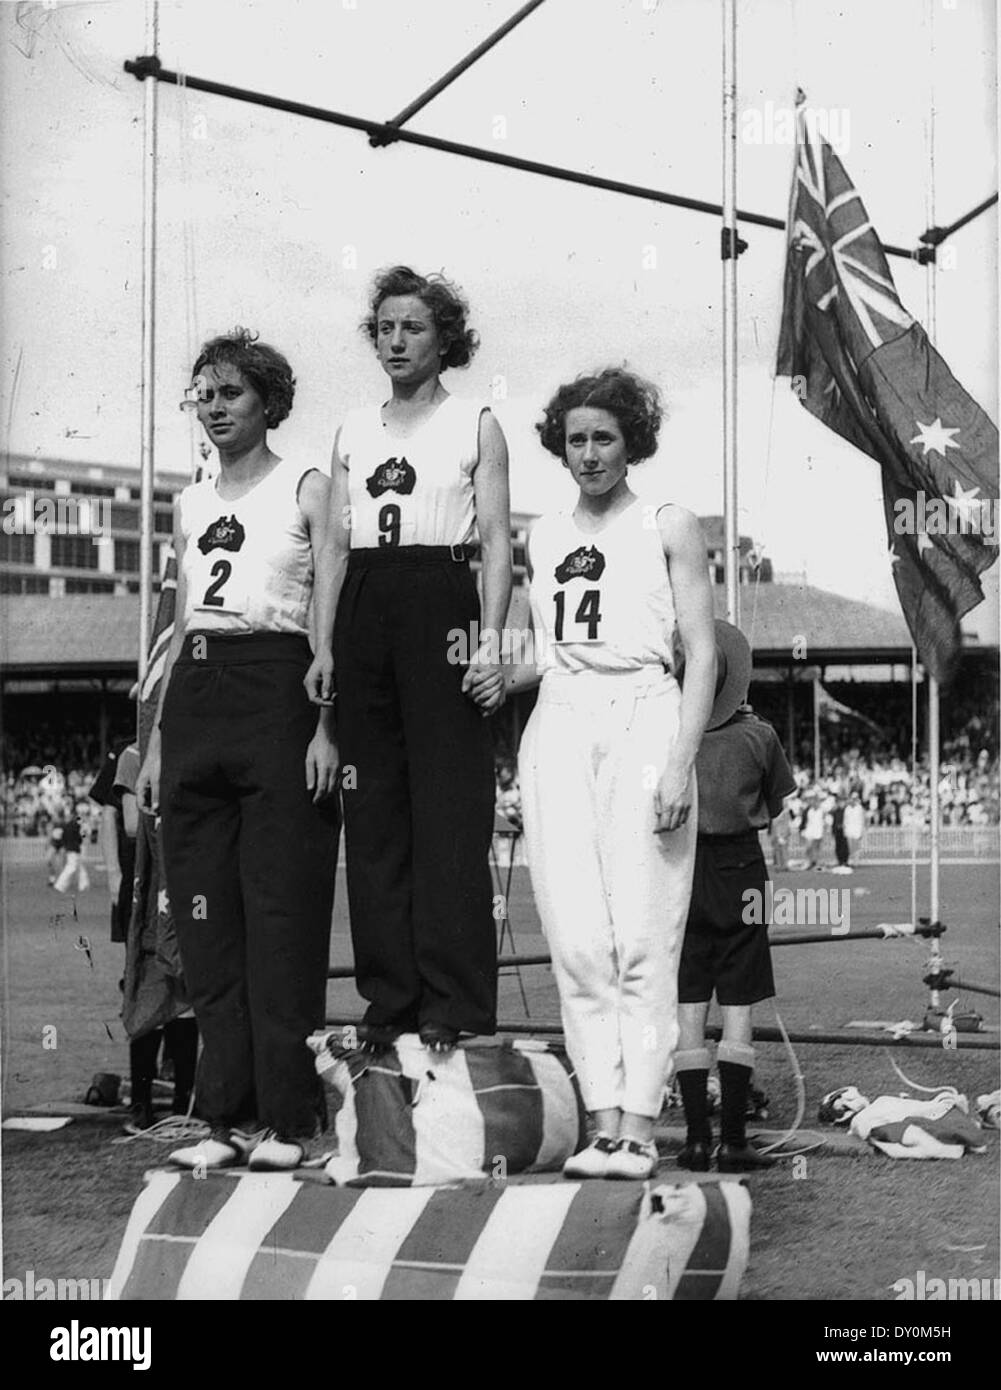 Decima Norman, Jean Coleman und Eileen Wearne gewinnen Gold-, Silber- und Bronzemedaillen für Australien in der 220 Yard Sprint, Empire Games, Sydney, 11. Februar 1938/Fotograf Sam Haube Stockfoto